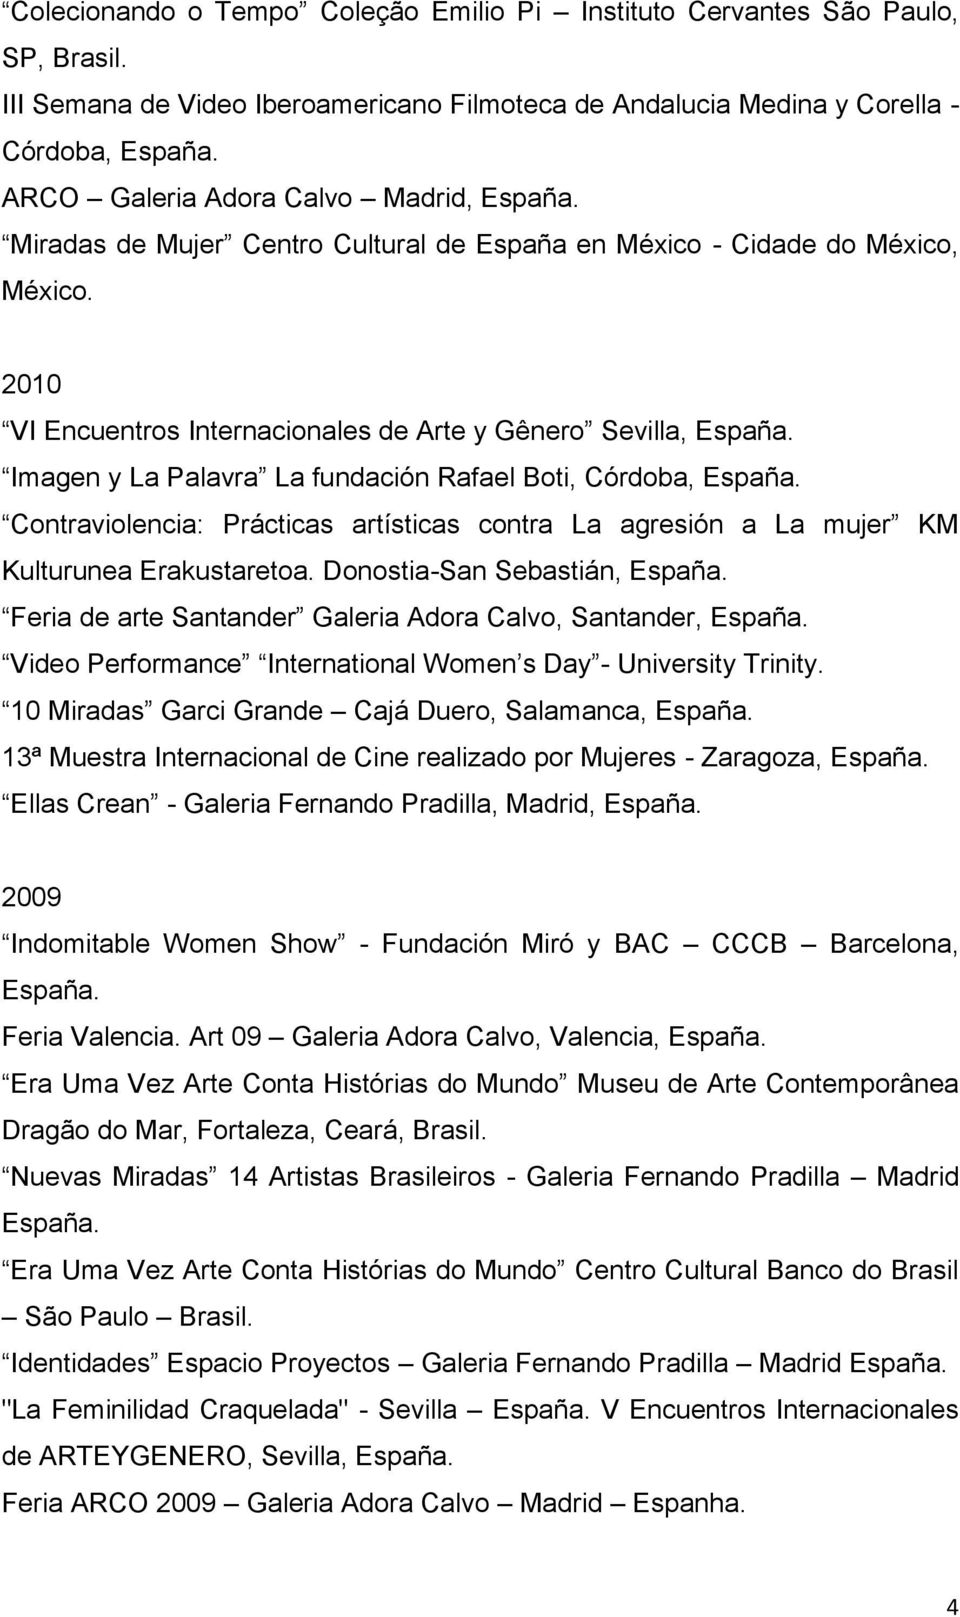 2010 VI Encuentros Internacionales de Arte y Gênero Sevilla, Imagen y La Palavra La fundación Rafael Boti, Córdoba, Contraviolencia: Prácticas artísticas contra La agresión a La mujer KM Kulturunea